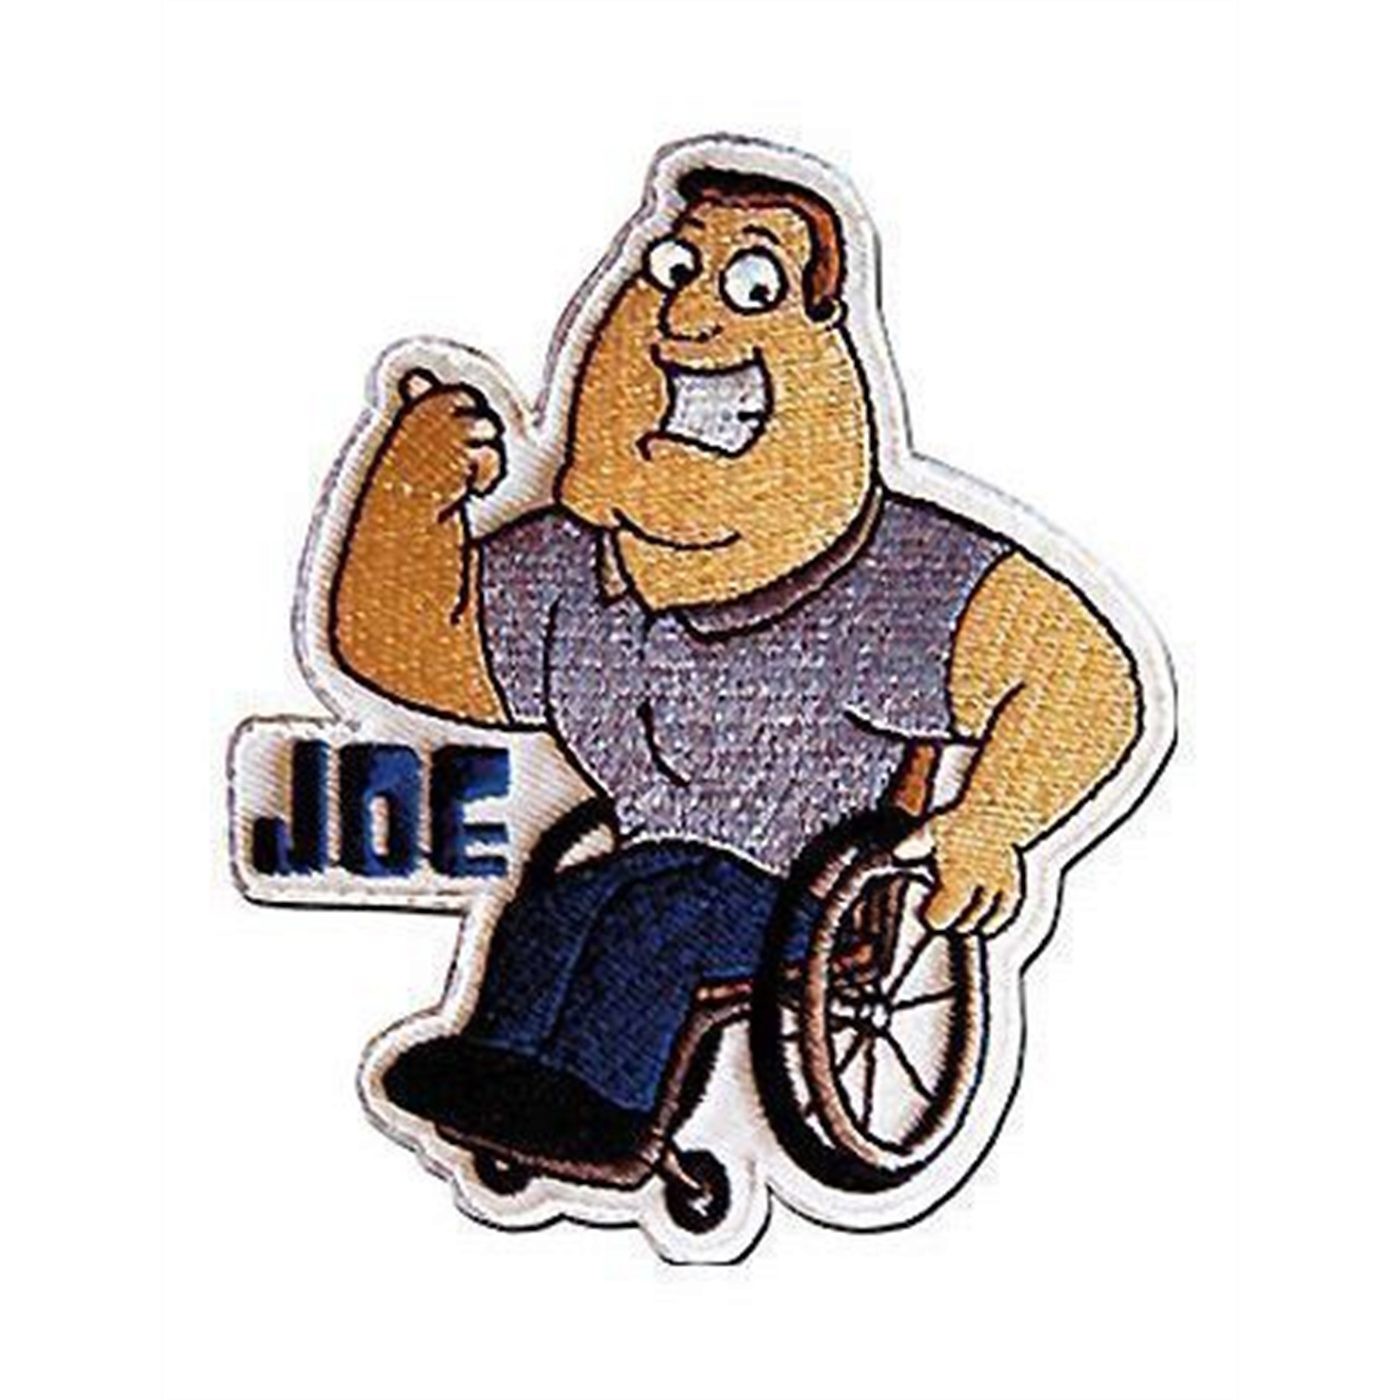 Family Guy Patch Joe